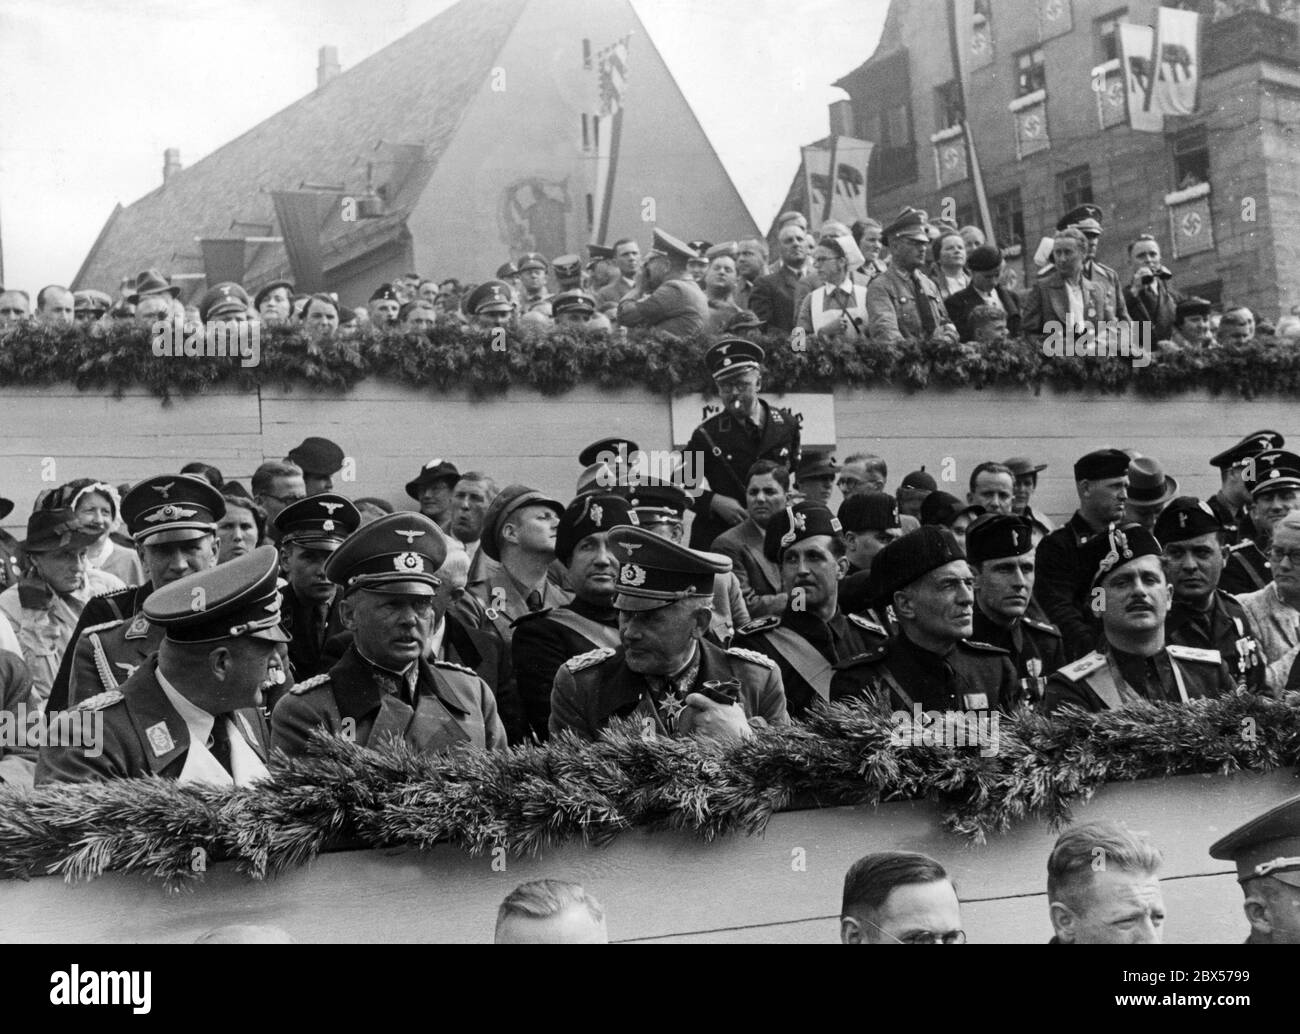 Vue sur la tribune des invités d'honneur, pendant la parade sur la place Adolf-Hitler-Platz de Nuremberg. Ci-dessous de gauche à droite : le général der Flieger Erhard Milch, le colonel général Freiherr Werner von Fritsch, le maréchal général Werner von Blomberg, et des invités italiens, dont le général Bastianini et le chef des travailleurs Cianetti. Banque D'Images